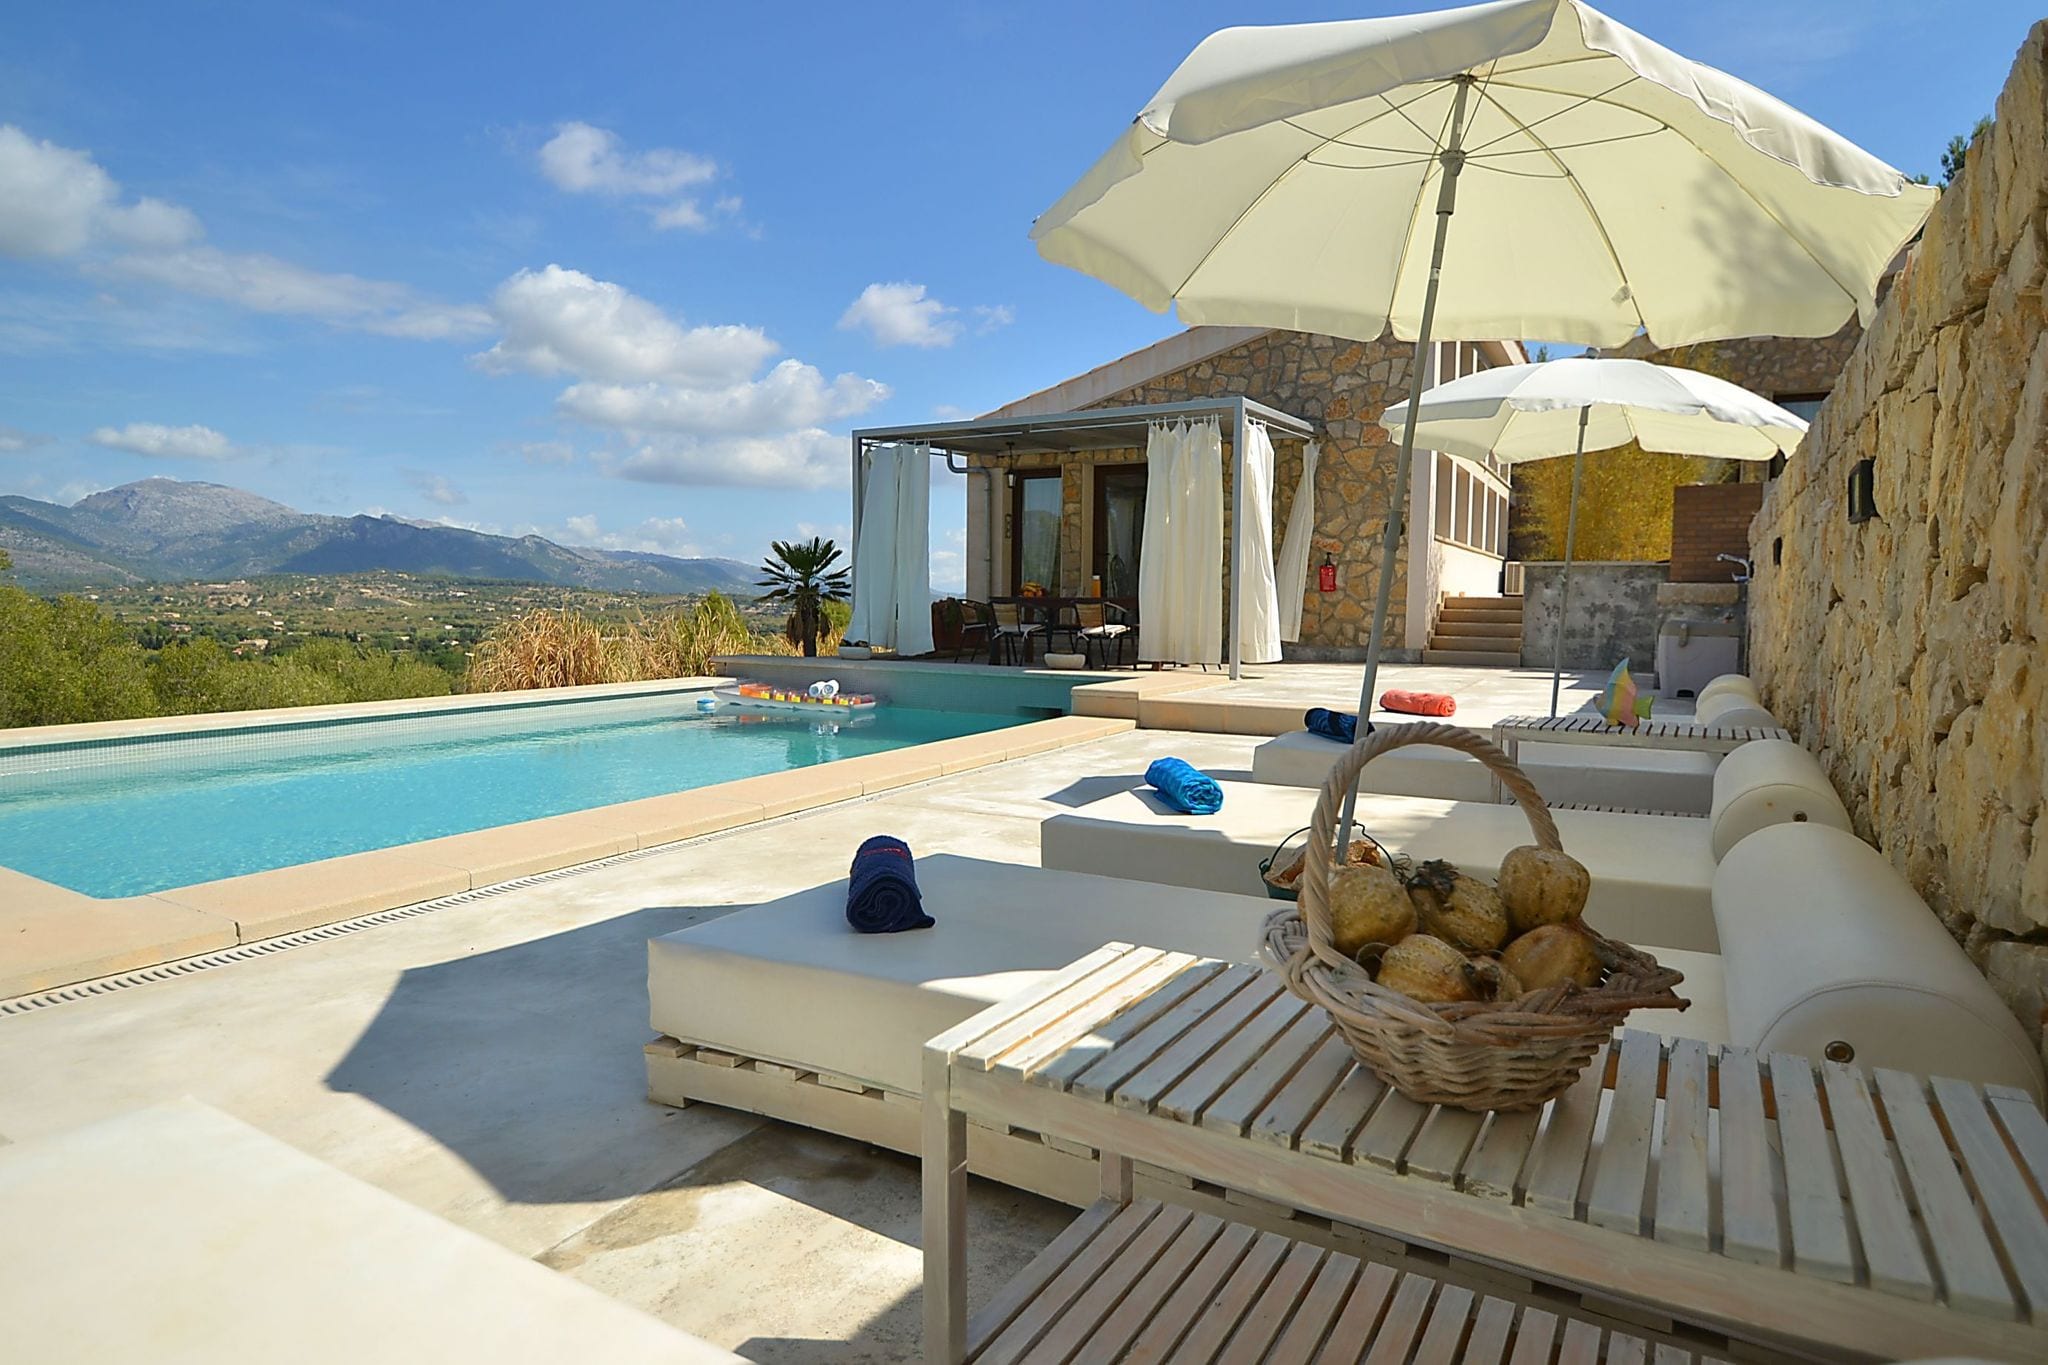 Modern ingericht vakantiehuis met privézwembad en fraai uitzicht over de bergen